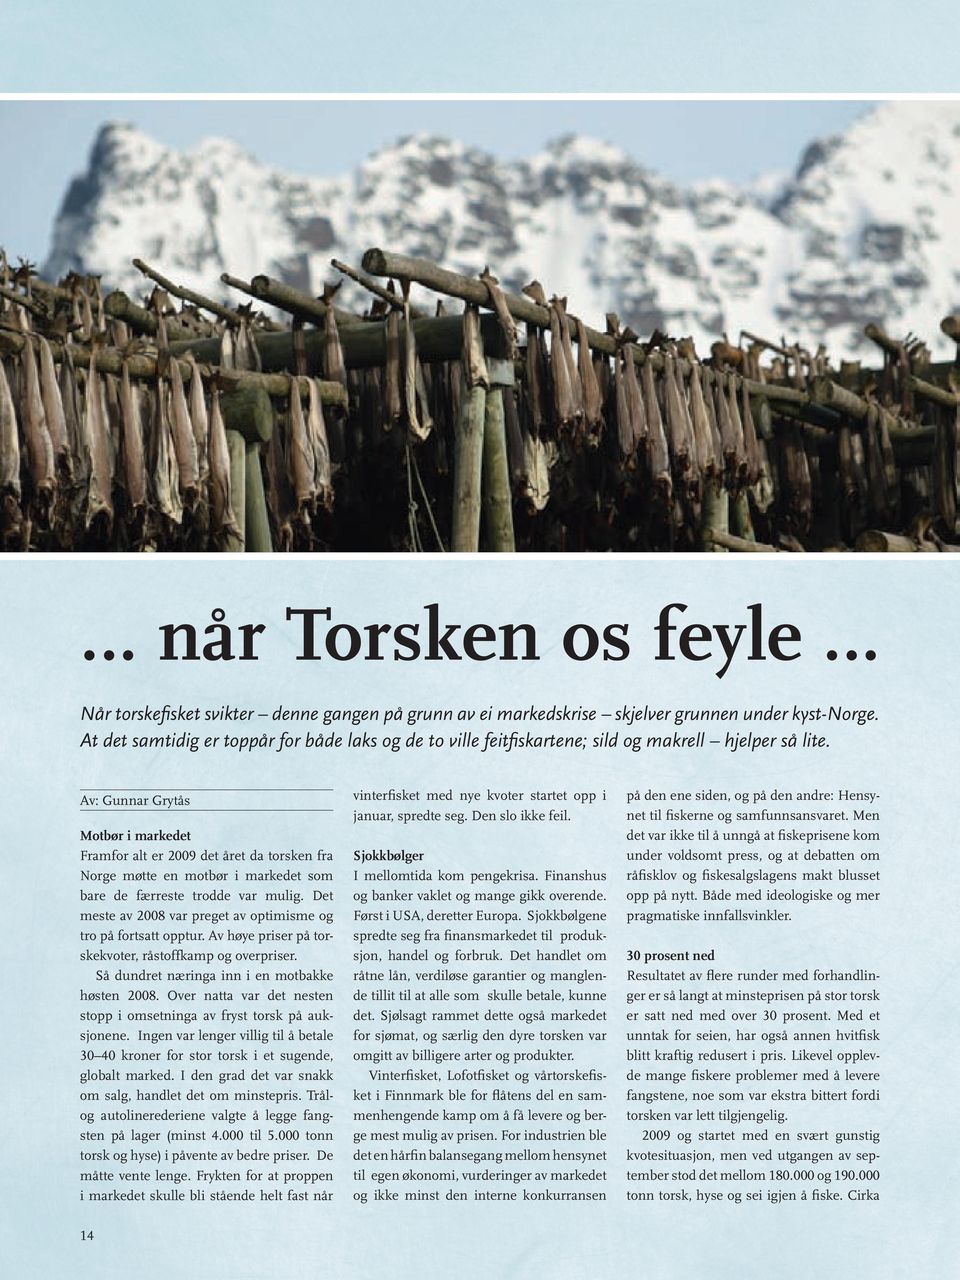 Av: Gunnar Grytås Motbør i markedet Framfor alt er 2009 det året da torsken fra Norge møtte en motbør i markedet som bare de færreste trodde var mulig.